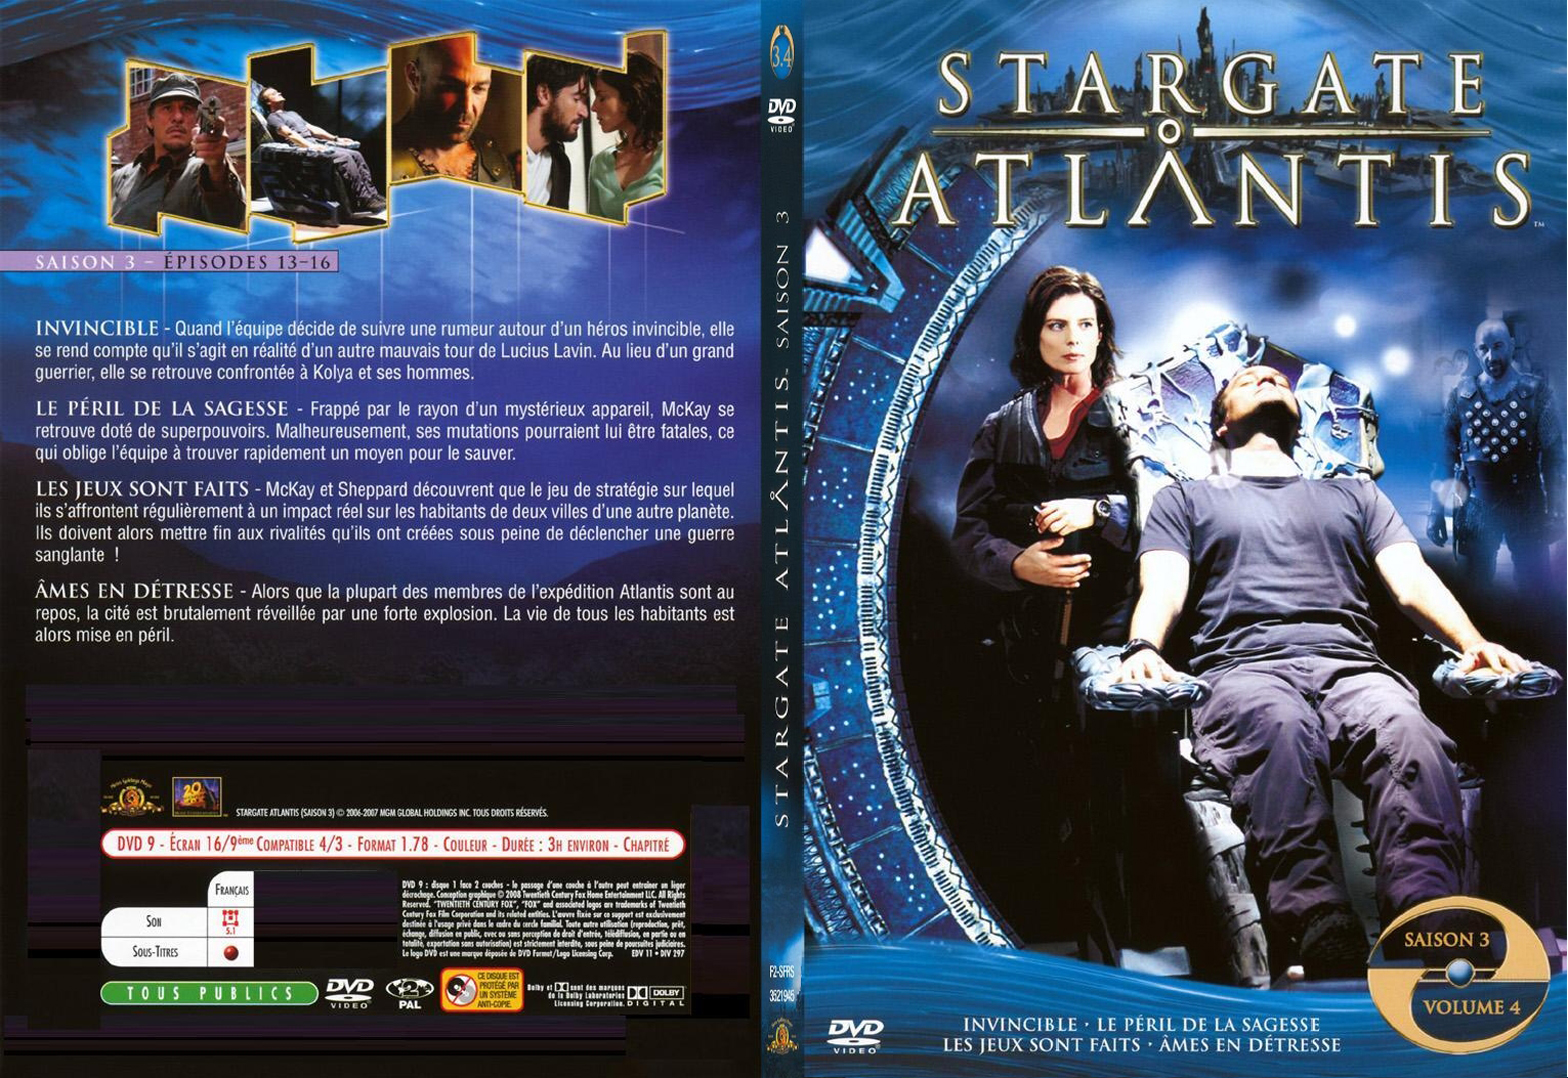 Jaquette DVD Stargate Atlantis saison 3 vol 4 - SLIM